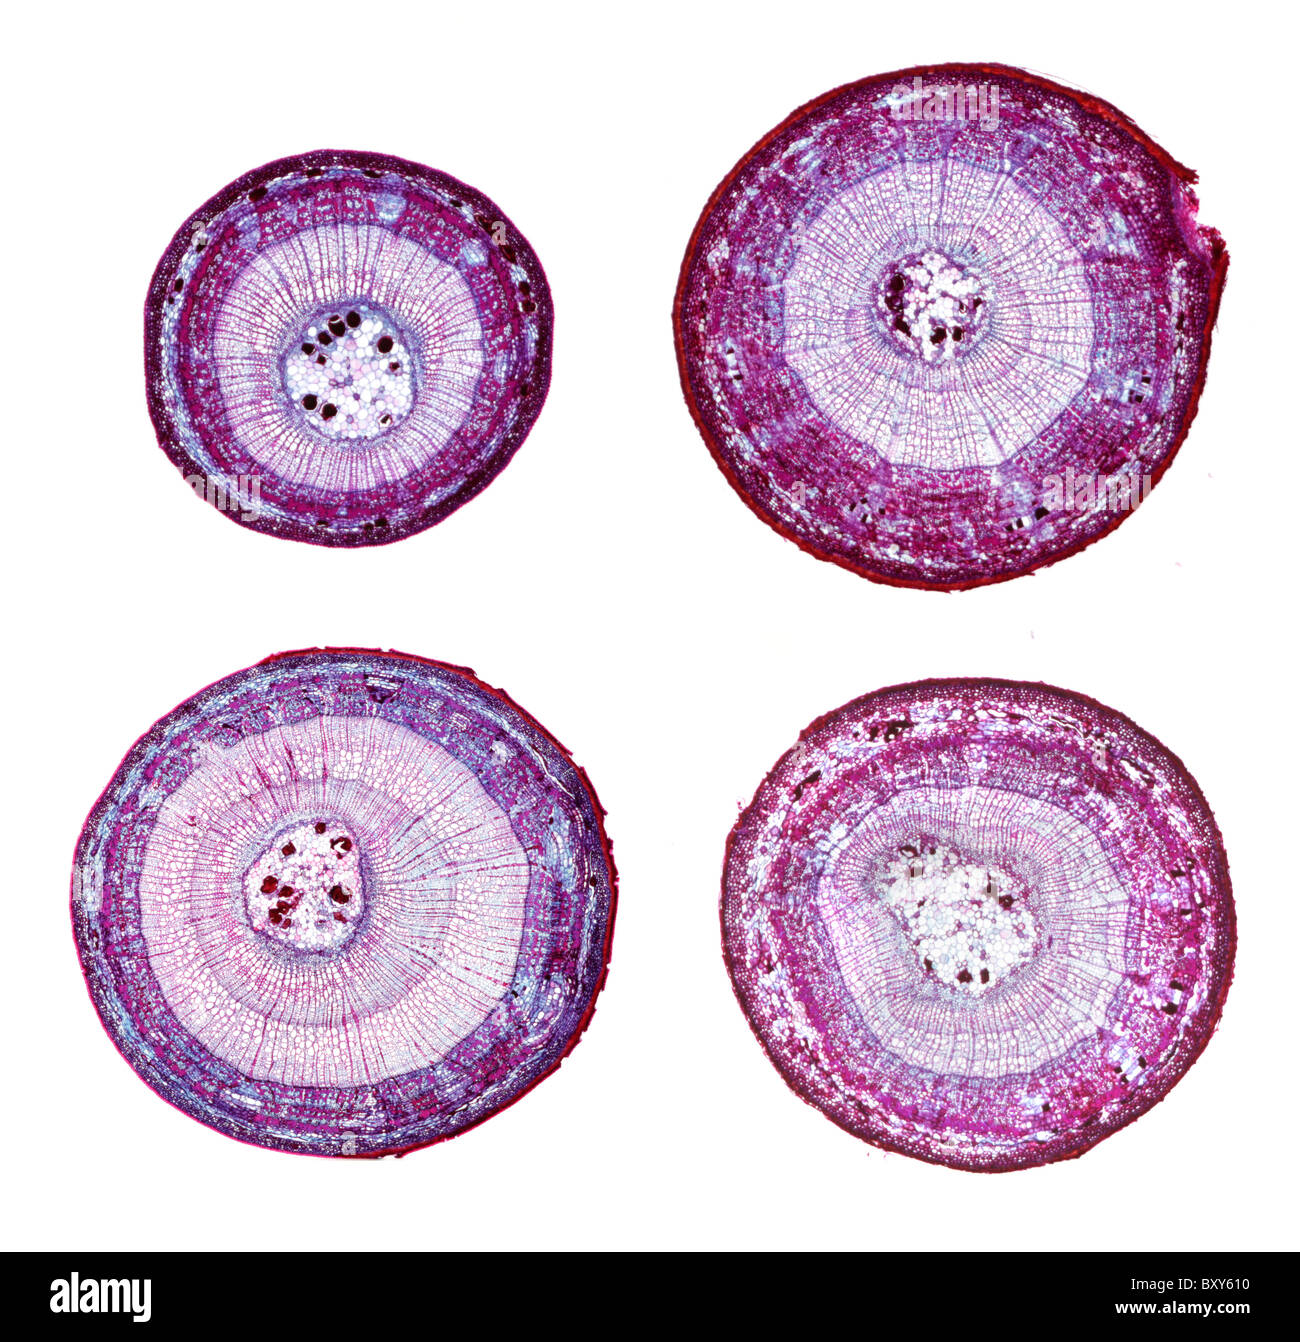 Micrographies de lumière le tilleul (Tilia americana) tiges en section transversale. Grâce à un an Trois ans de spécimens. Banque D'Images